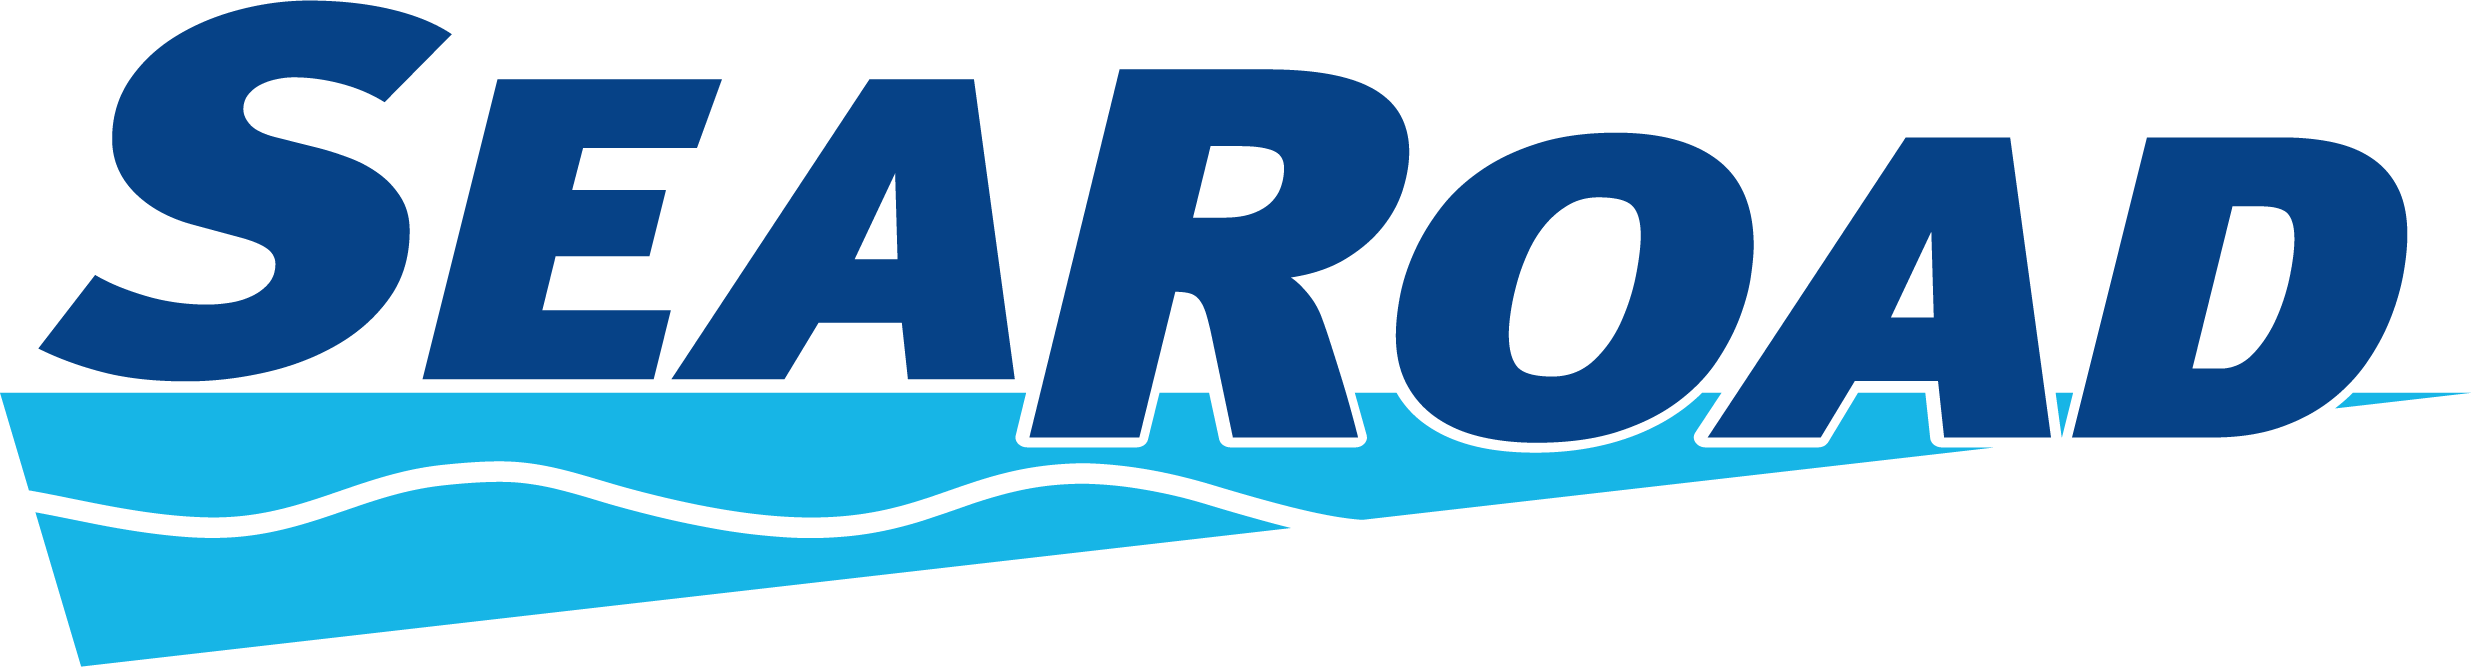 SeaRoad_Primary_Logo